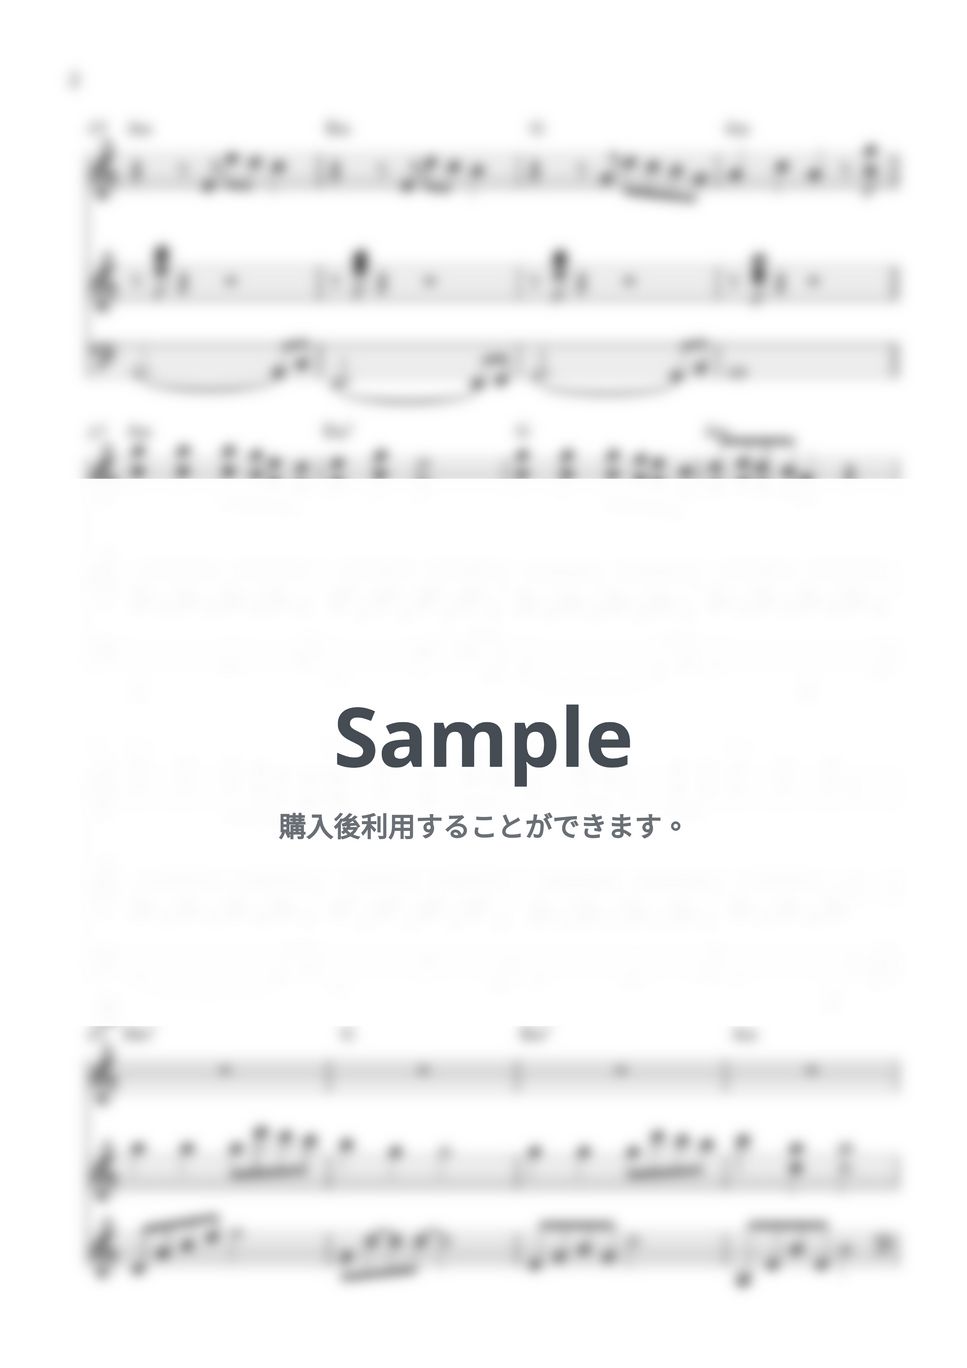 JISOO - Flower (Duo Piano) by 247KpopPiano